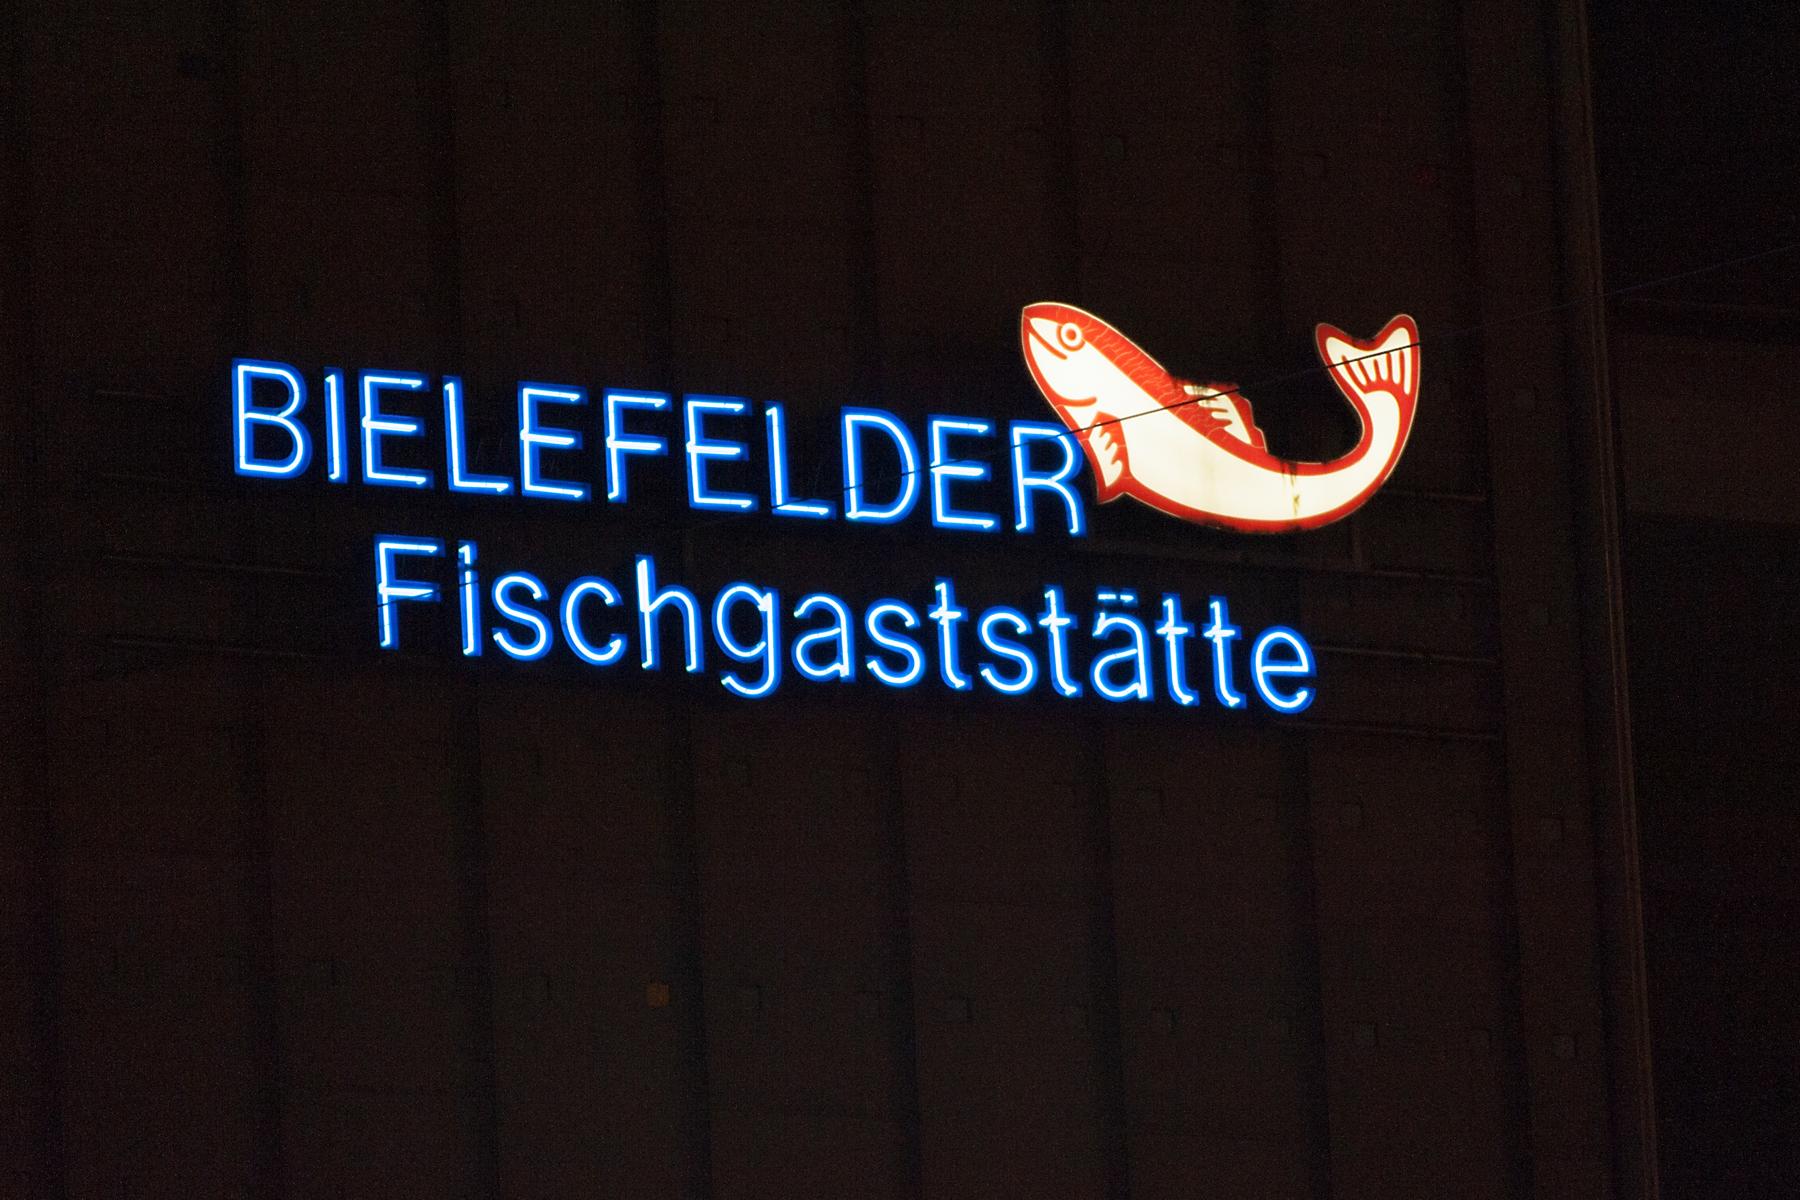 Bielefelder Fischgaststaette